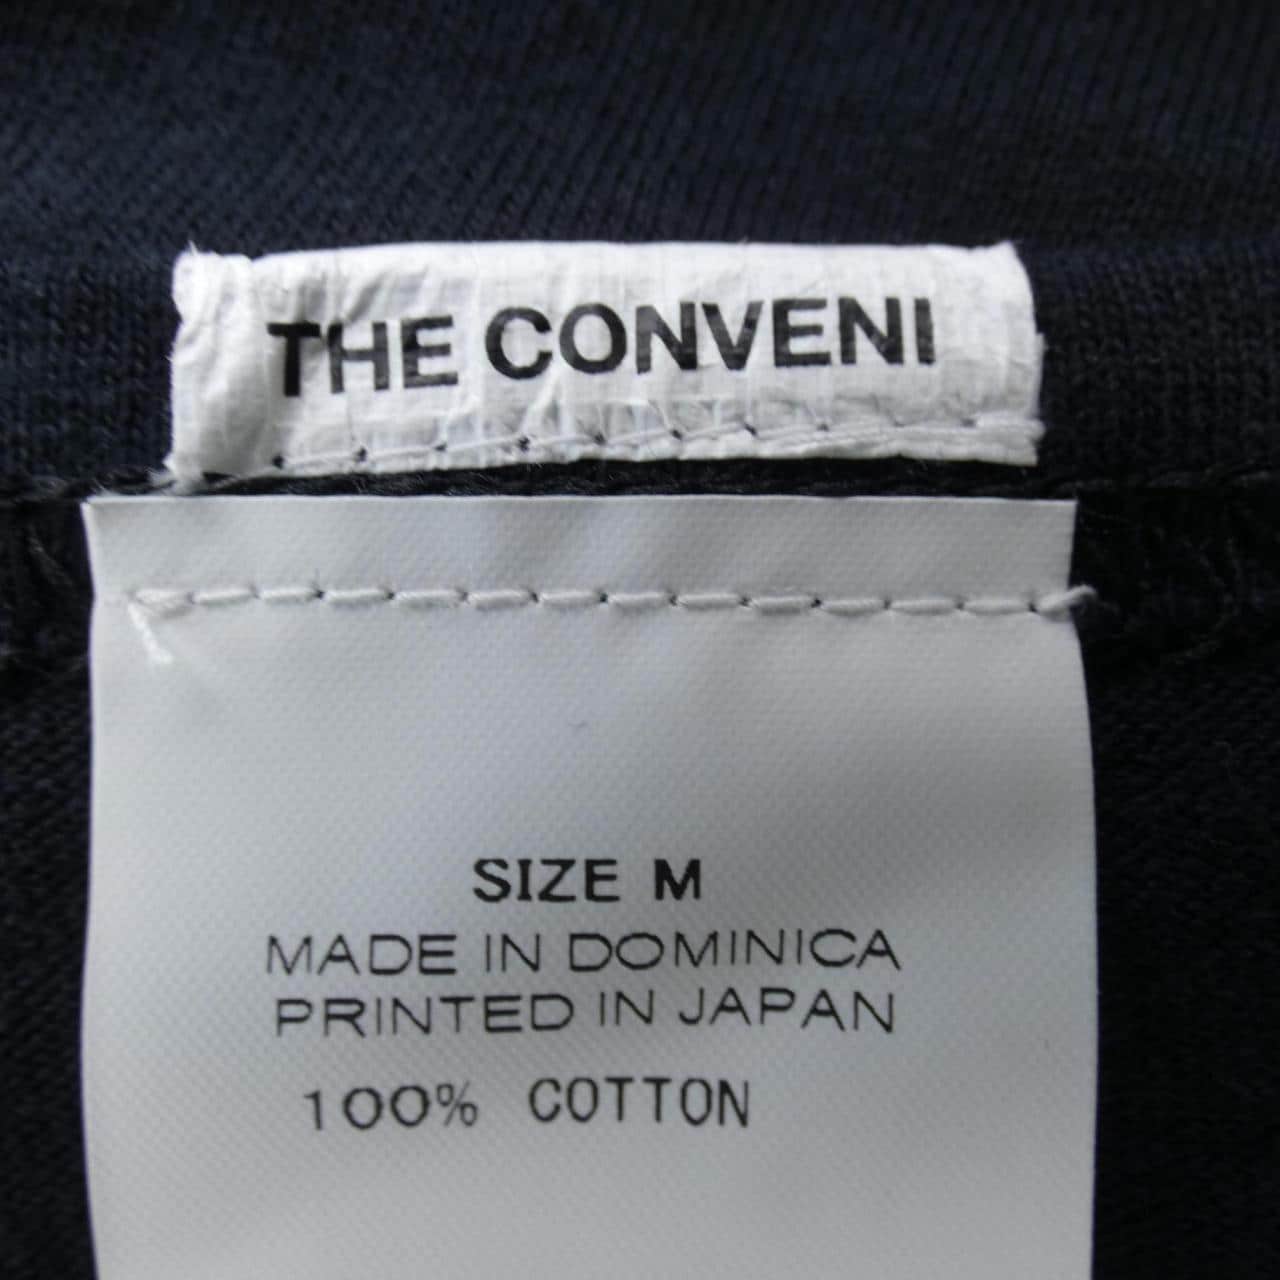 THE CONVENI Tシャツ